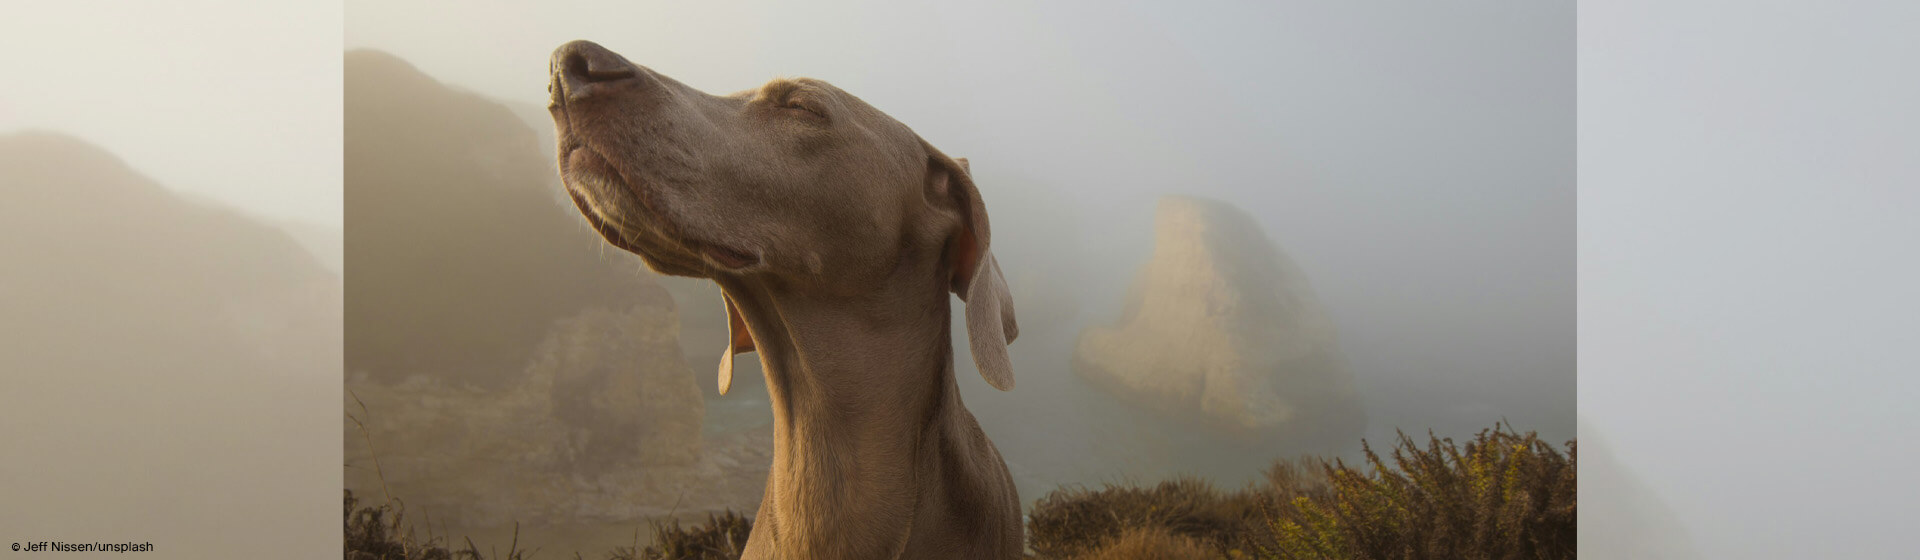 Hund reckt Nase in die Luft und schnüffelt